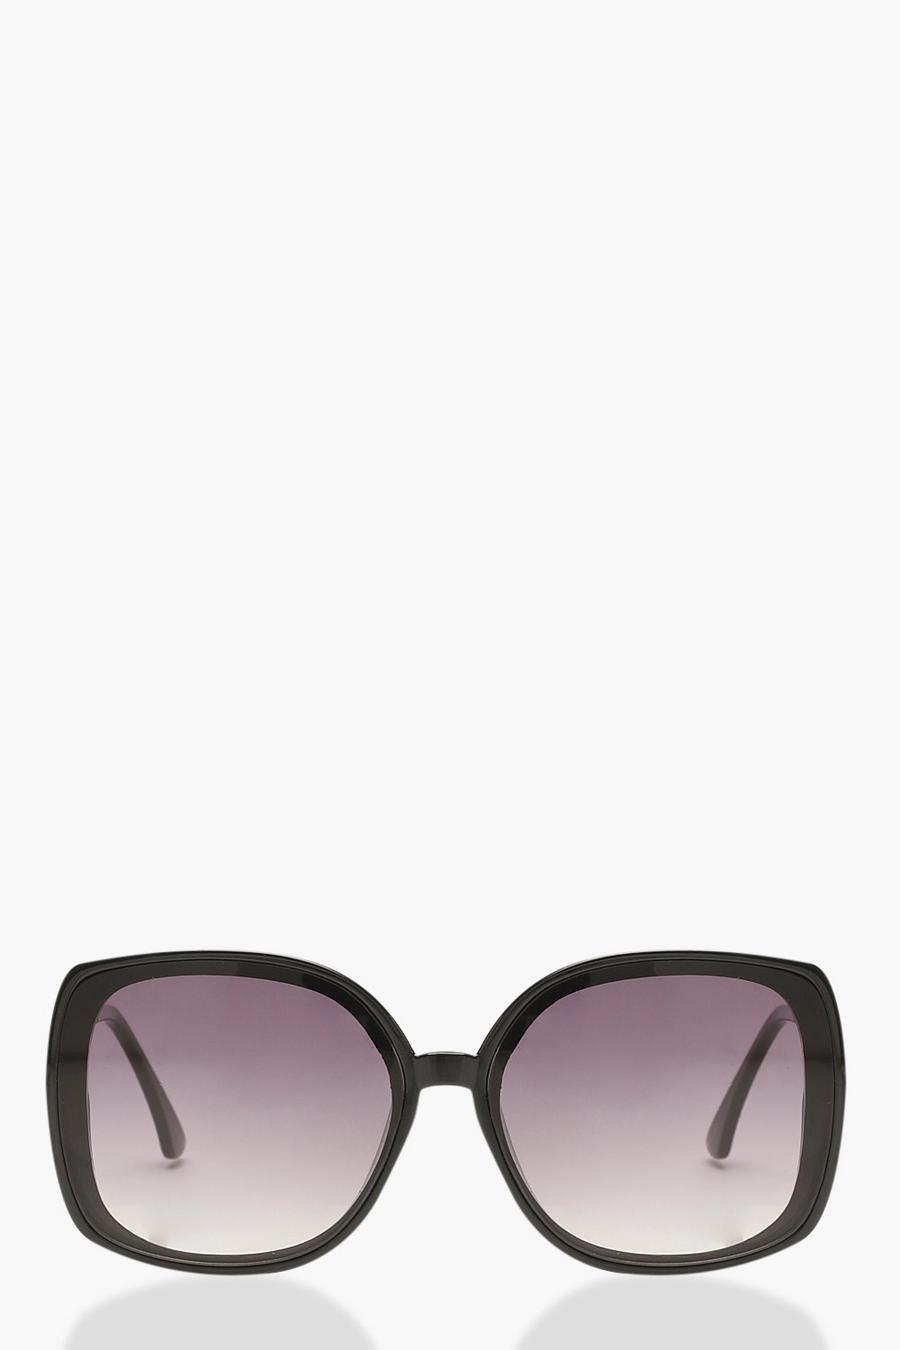 Gafas de sol redondas anchos con varilla metálica y lentes ahumadas image number 1